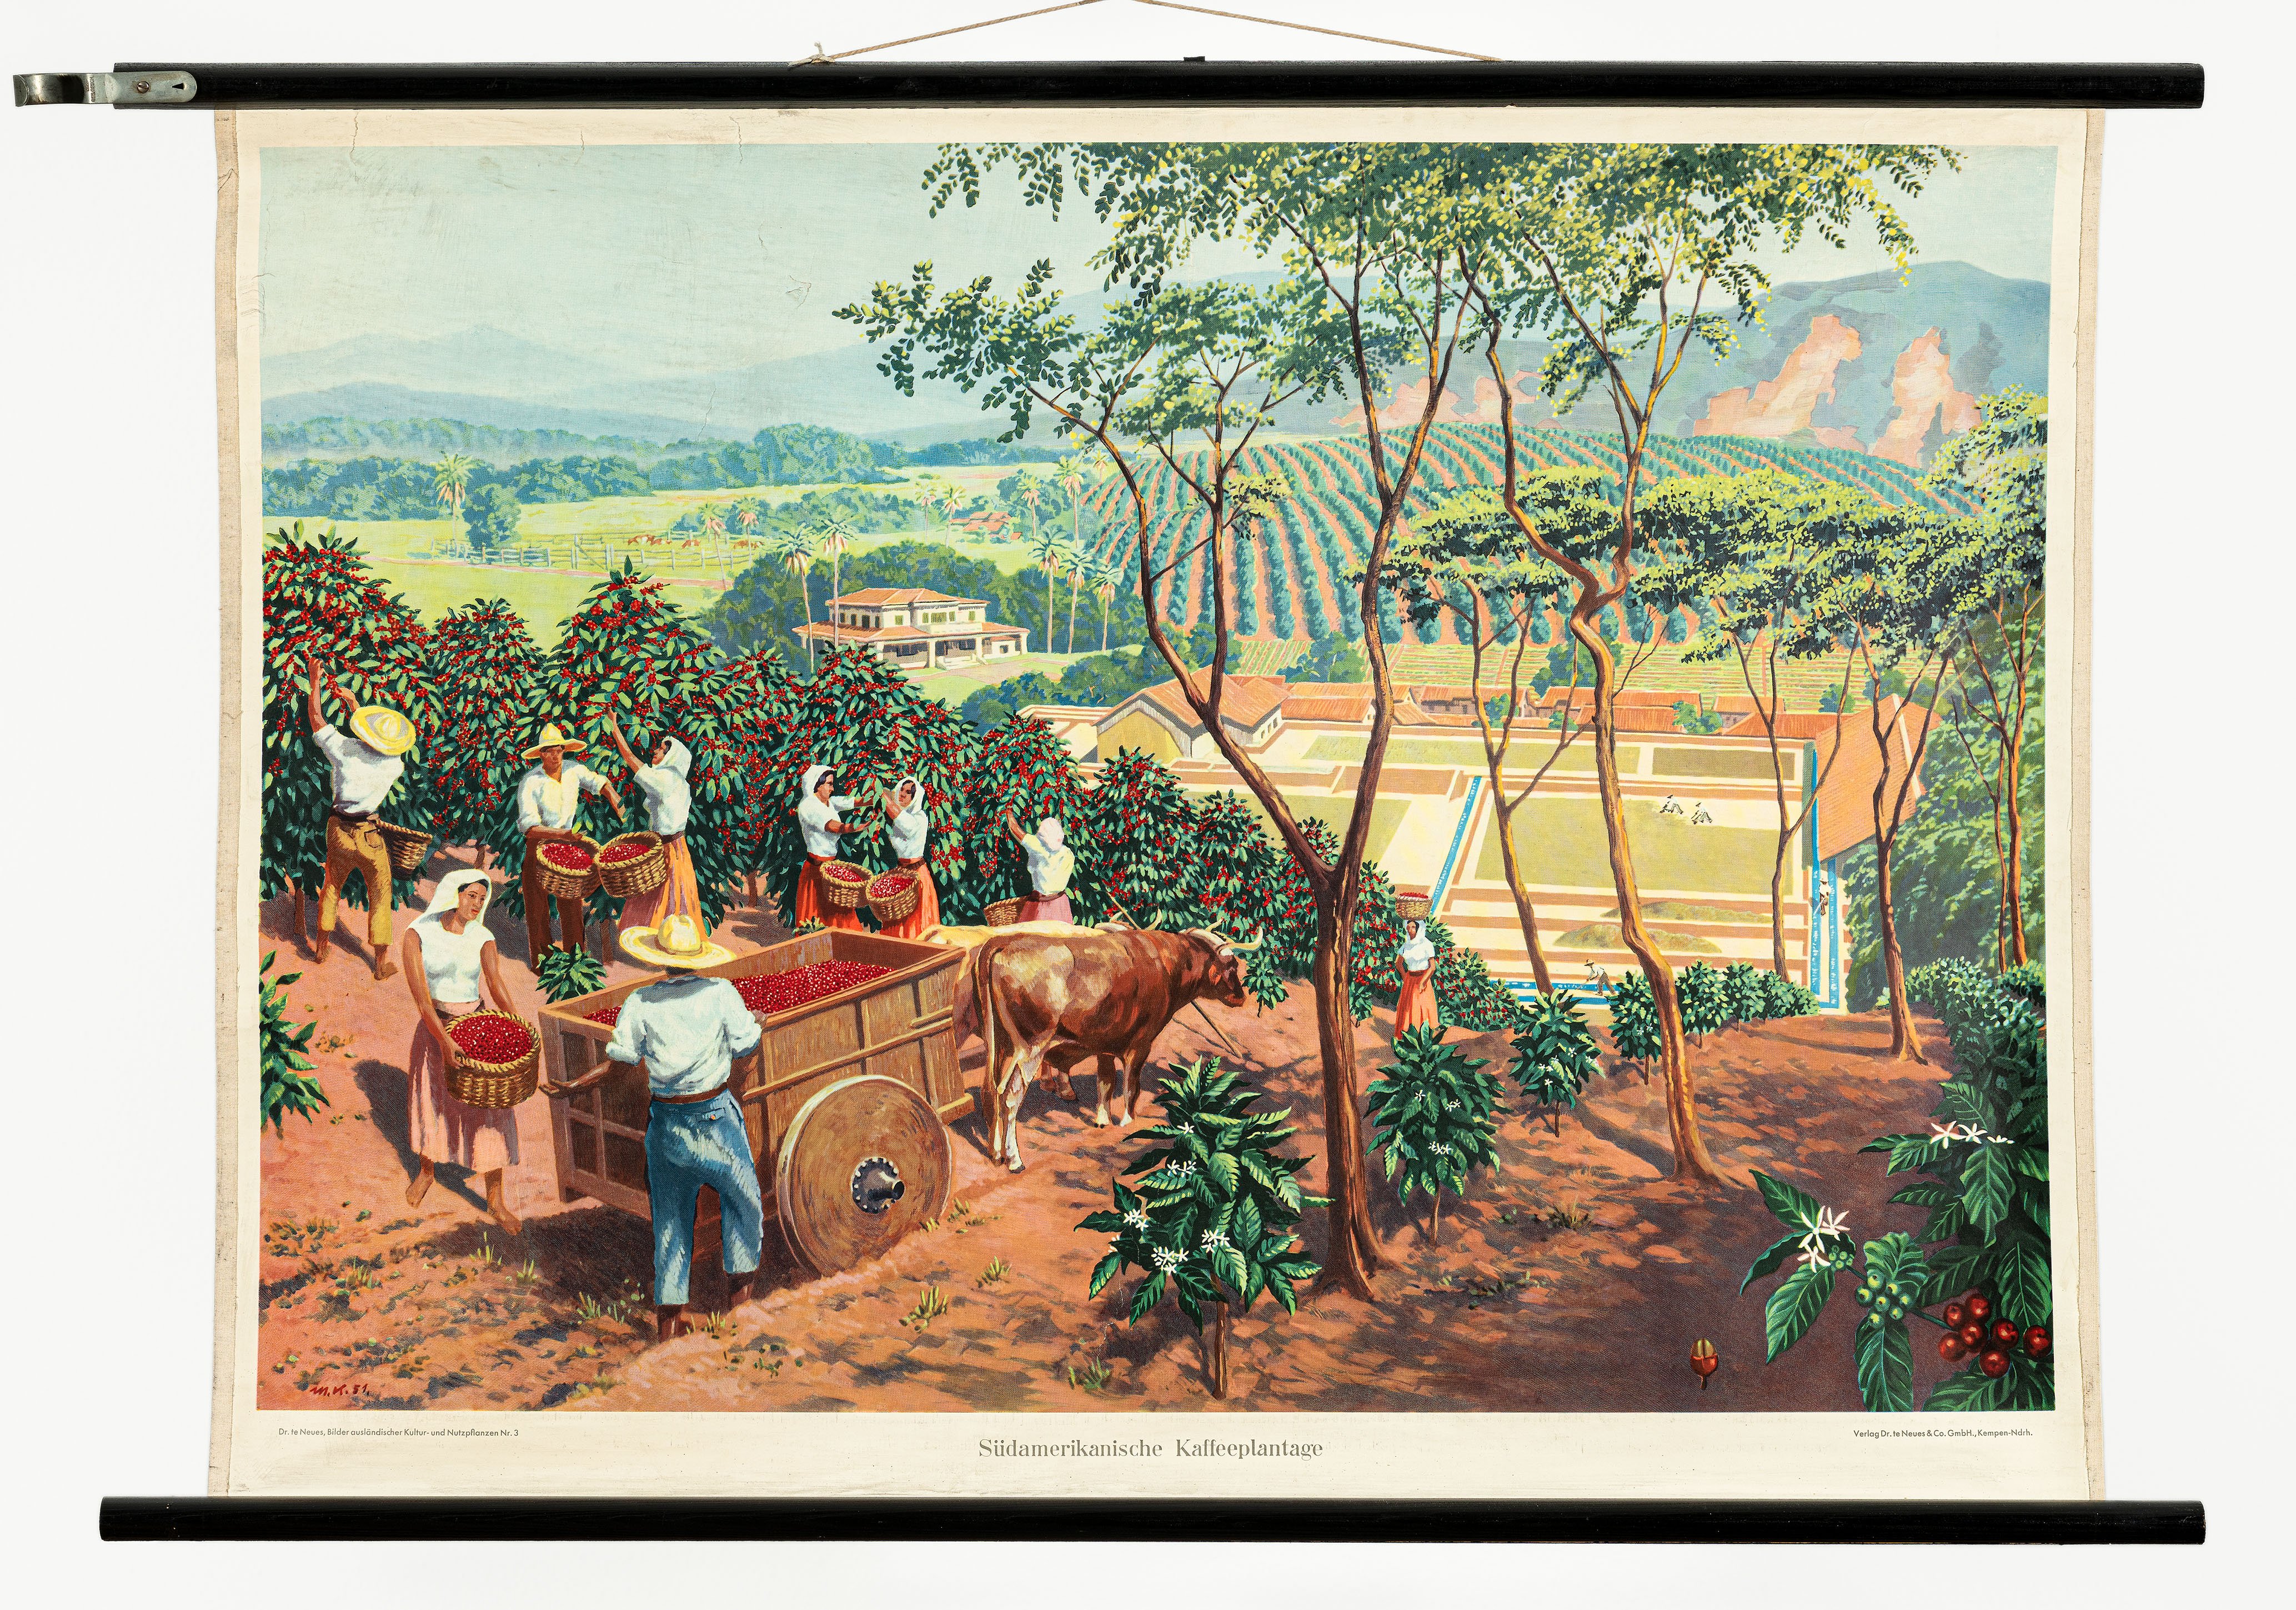 Schulwandbild "Südamerikanische Kaffeeplantage" (Mitte Museum/Bezirksamt Mitte von Berlin CC BY-NC-ND)